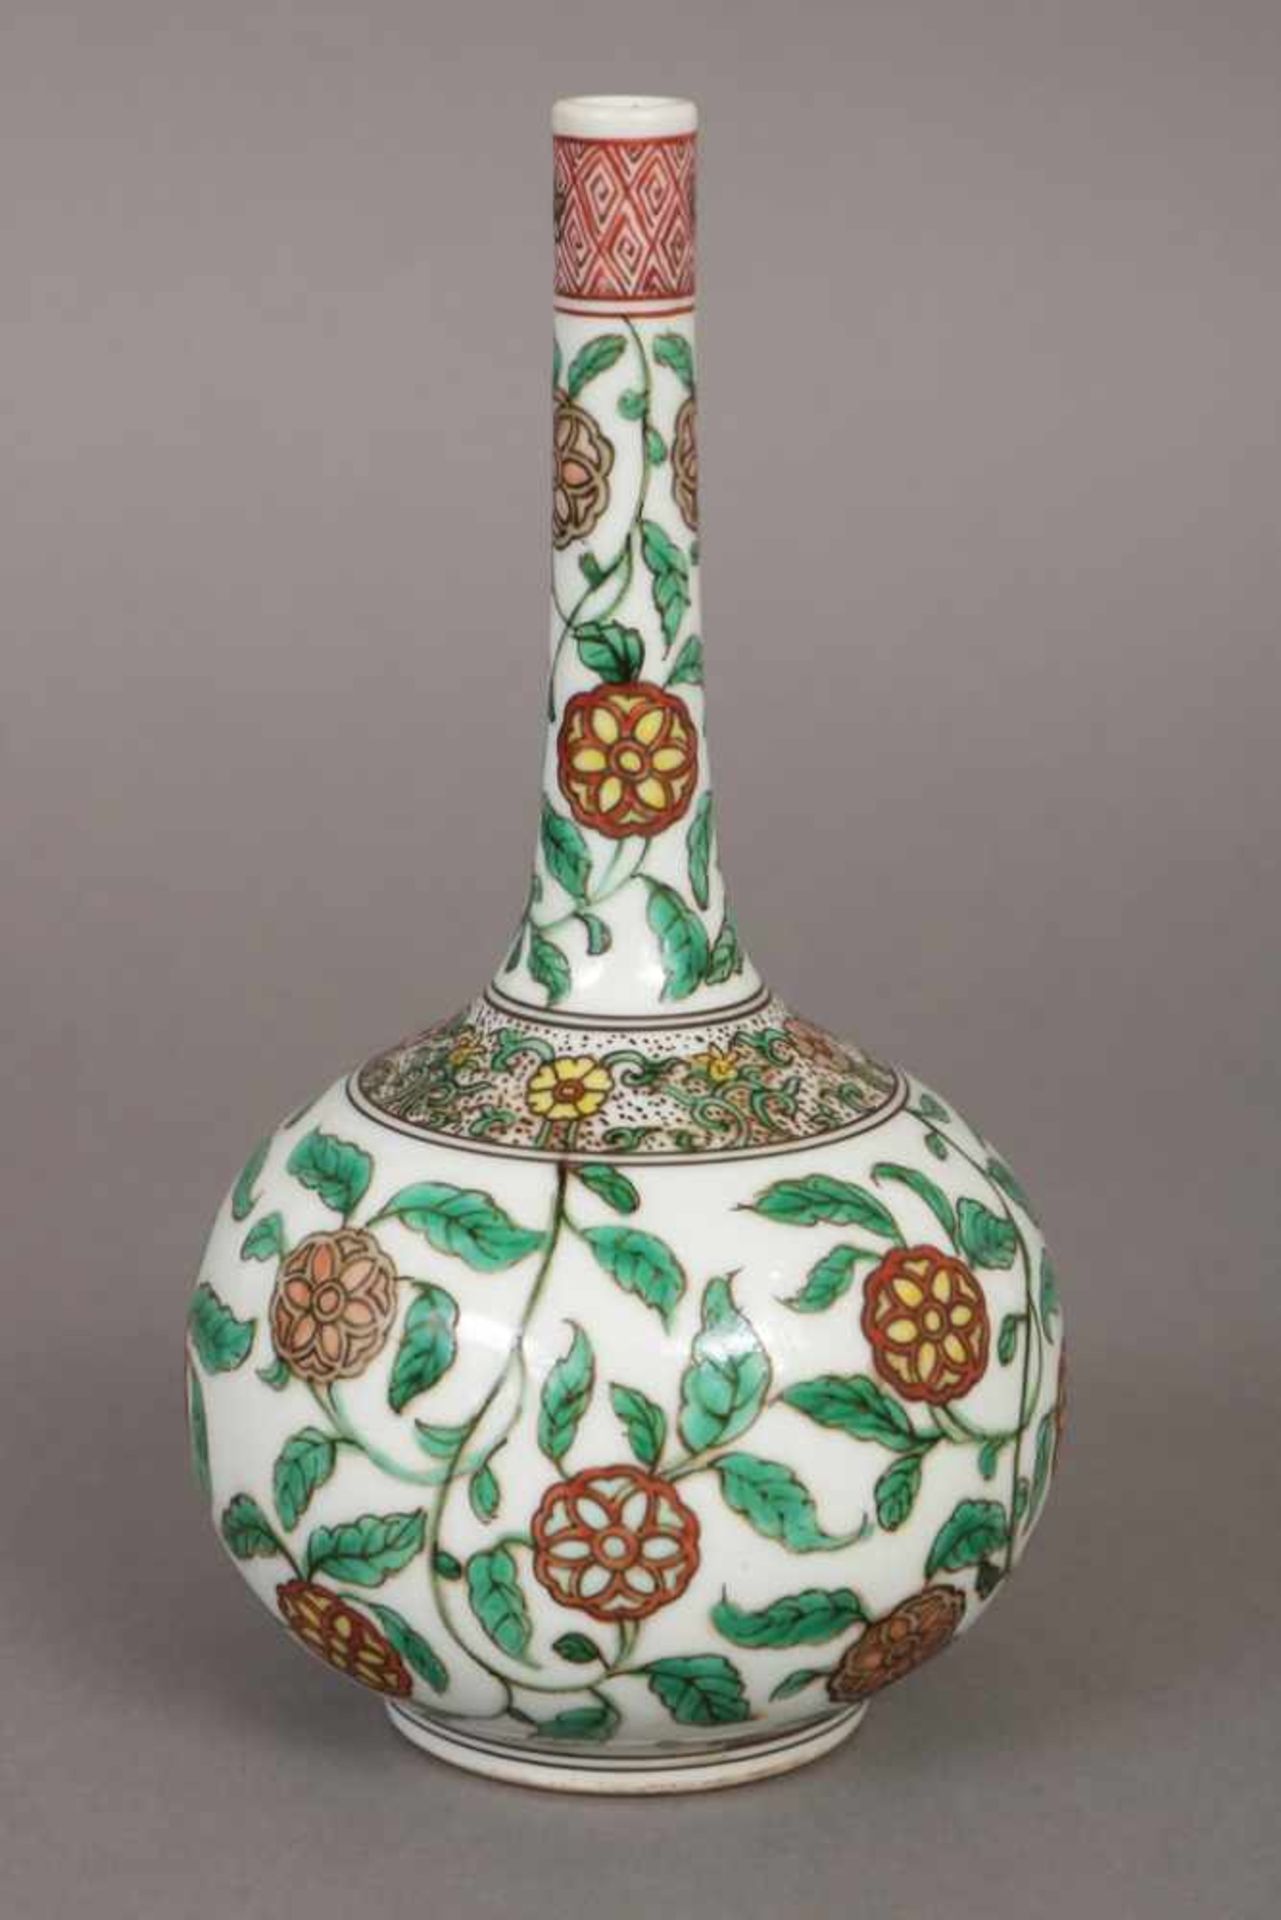 Chinesische Porzellanvase bauchiger, zwiebelförmiger Korpus mit hohem, schlankem Hals, umlaufend